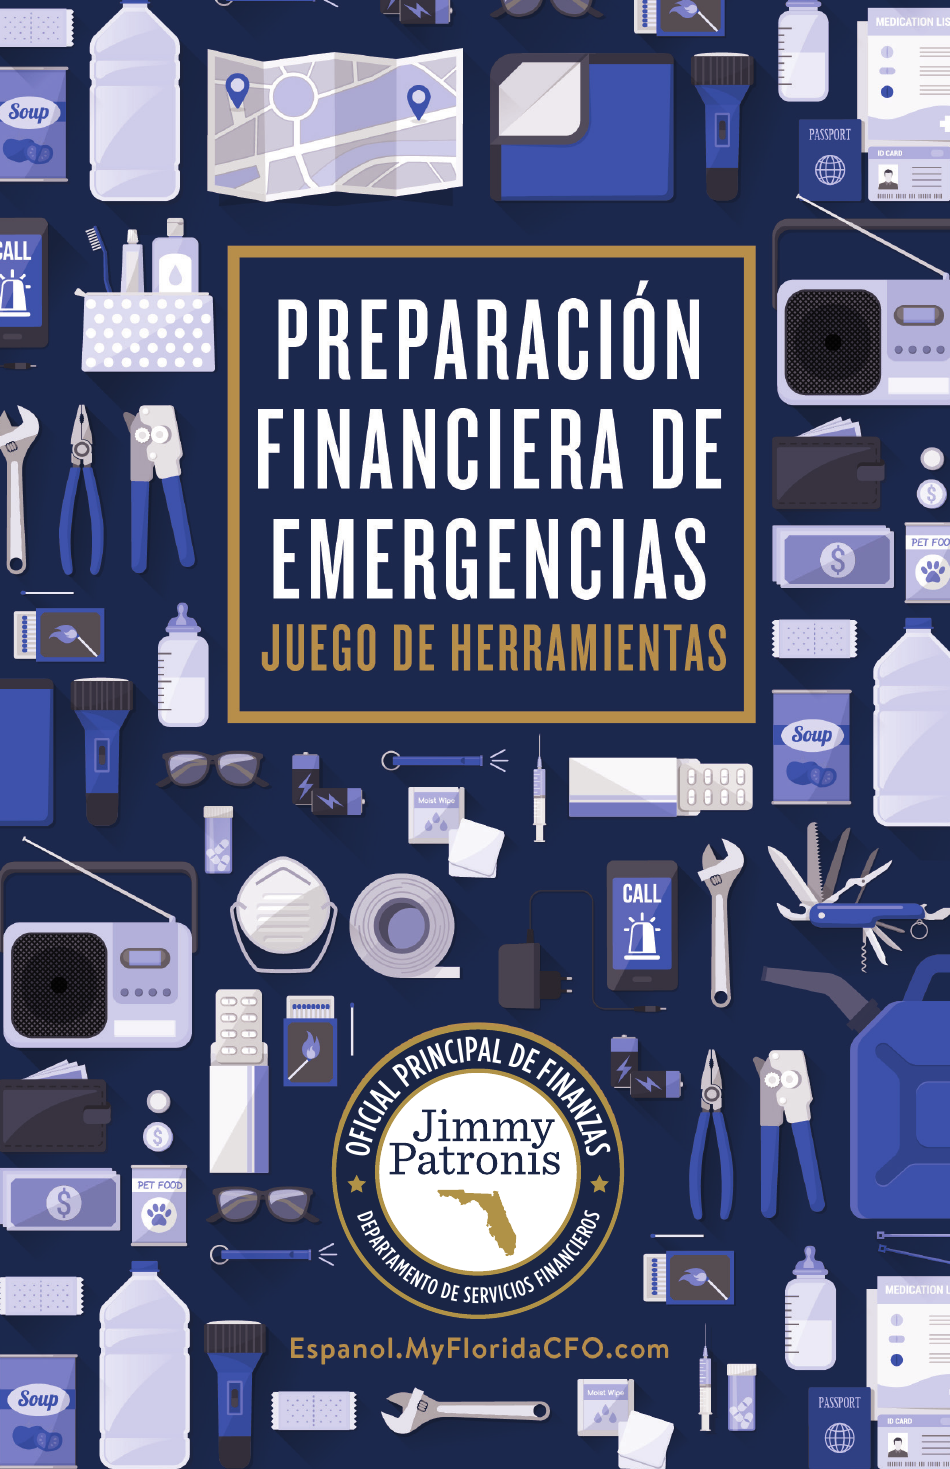 Financiera De Emergencias Juego De Herramientas - Florida (Spanish), Page 1